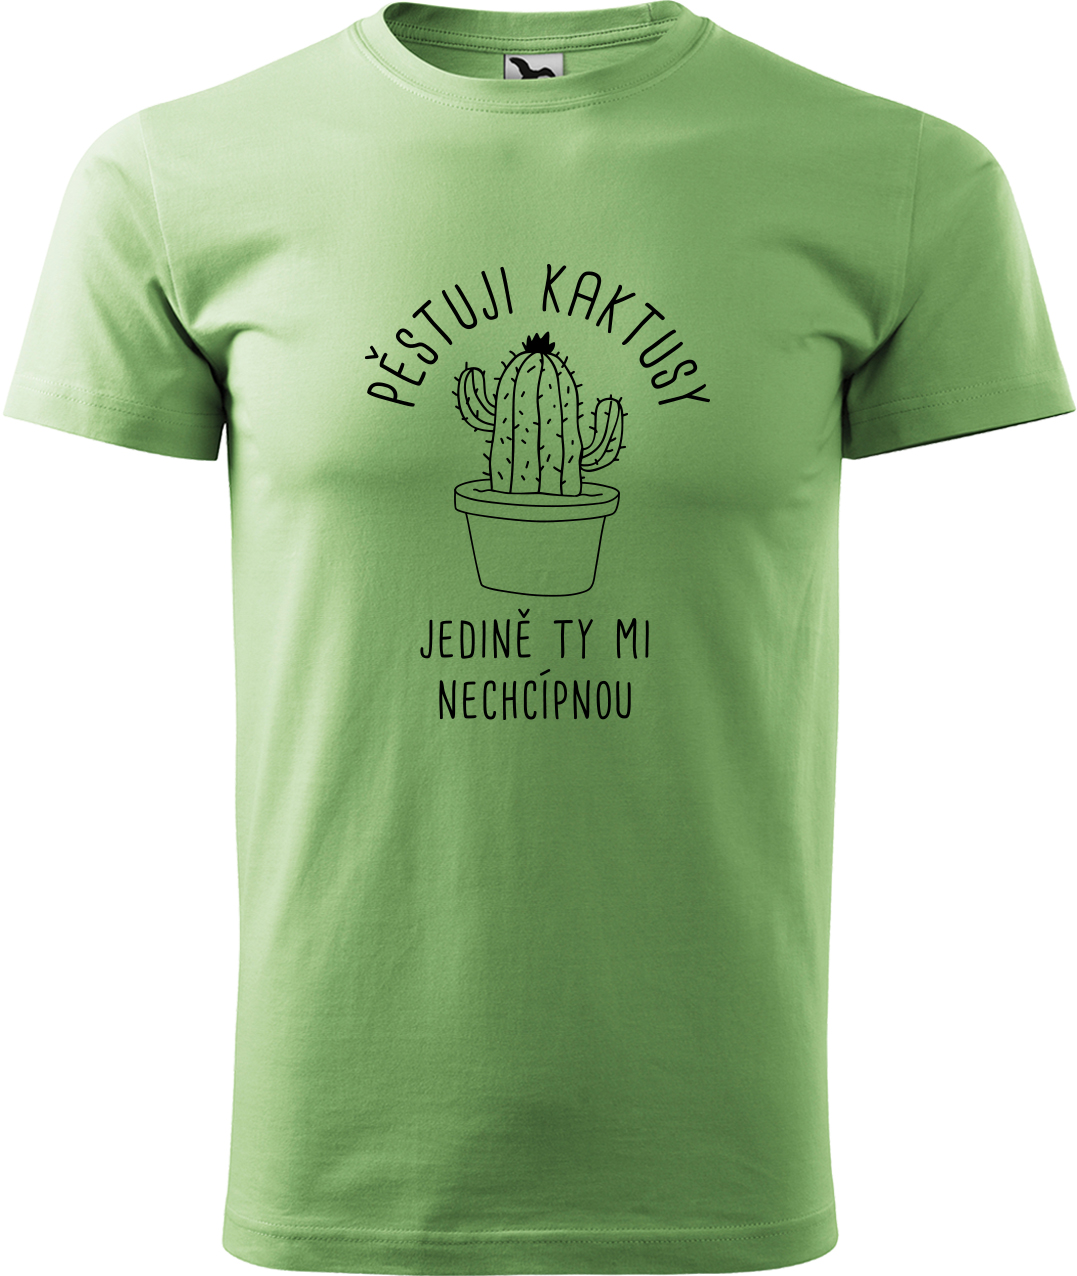 Tričko s kaktusem - Pěstuji kaktusy, jedině ty mi nechcípnou Velikost: 2XL, Barva: Trávově zelená (39), Střih: pánský